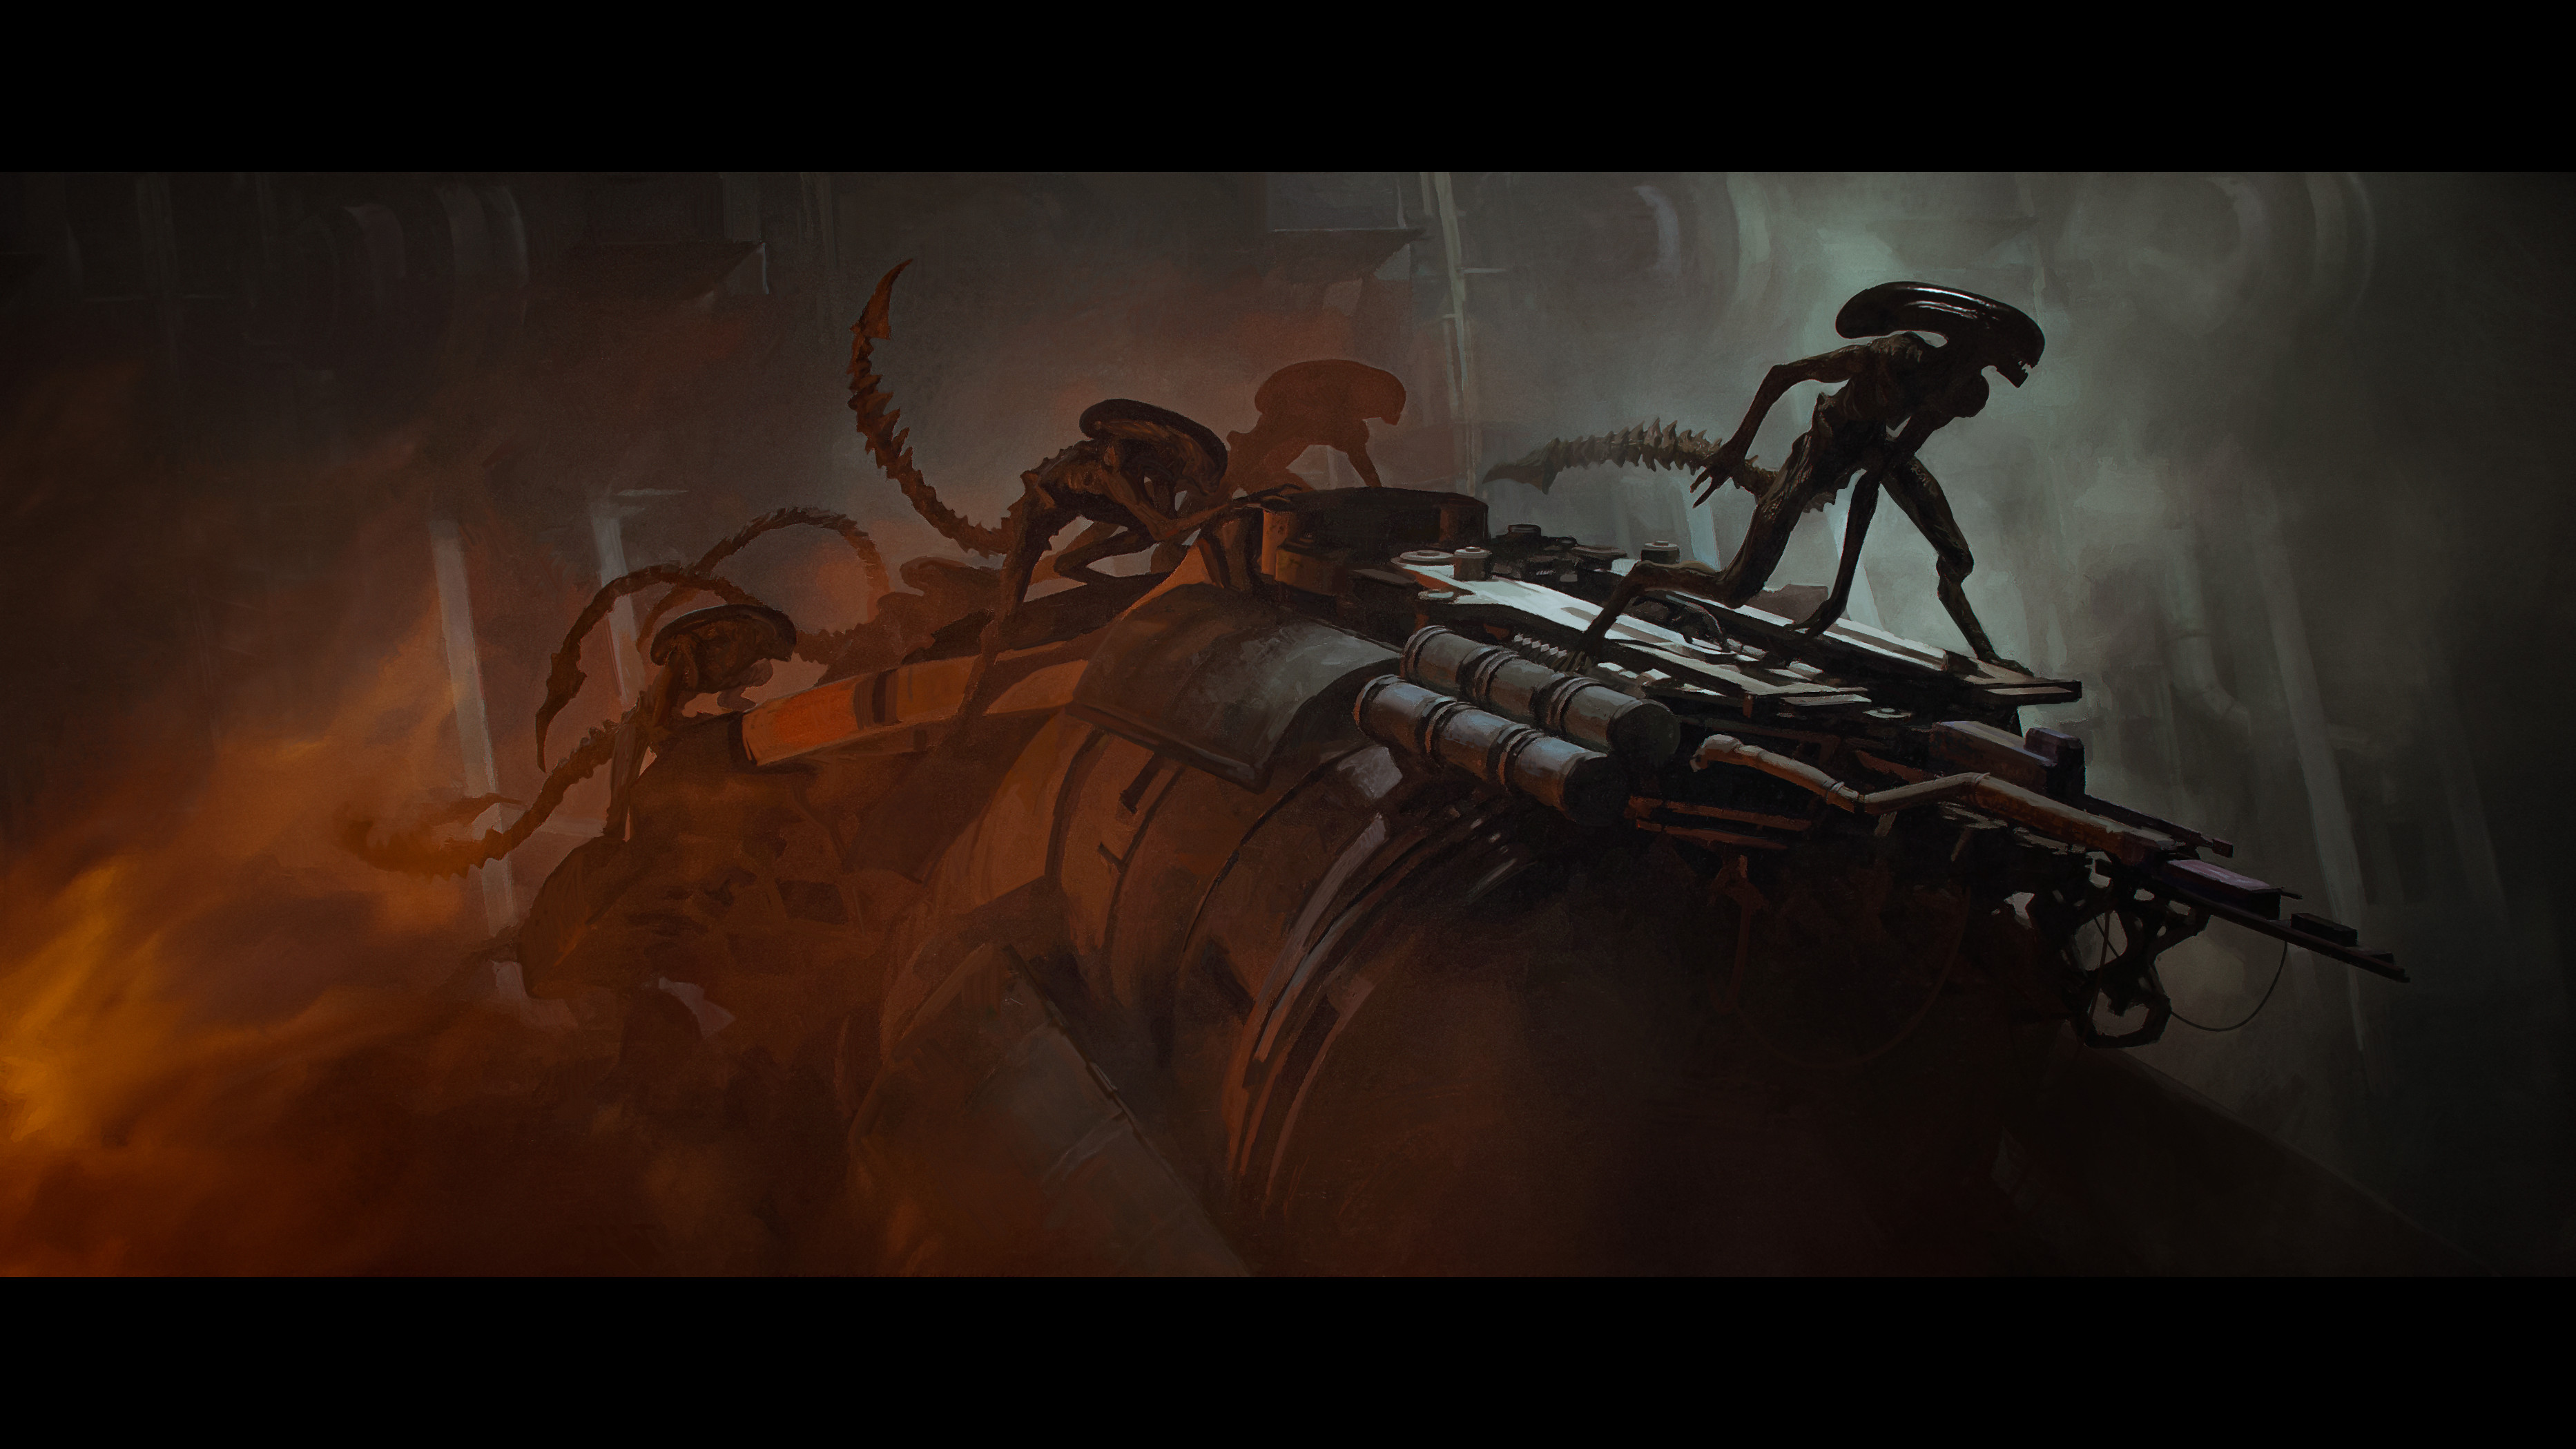 Aliens Xenomorph Horror Science Fiction Creature Artwork Tomasz Zarucki 3731x2098